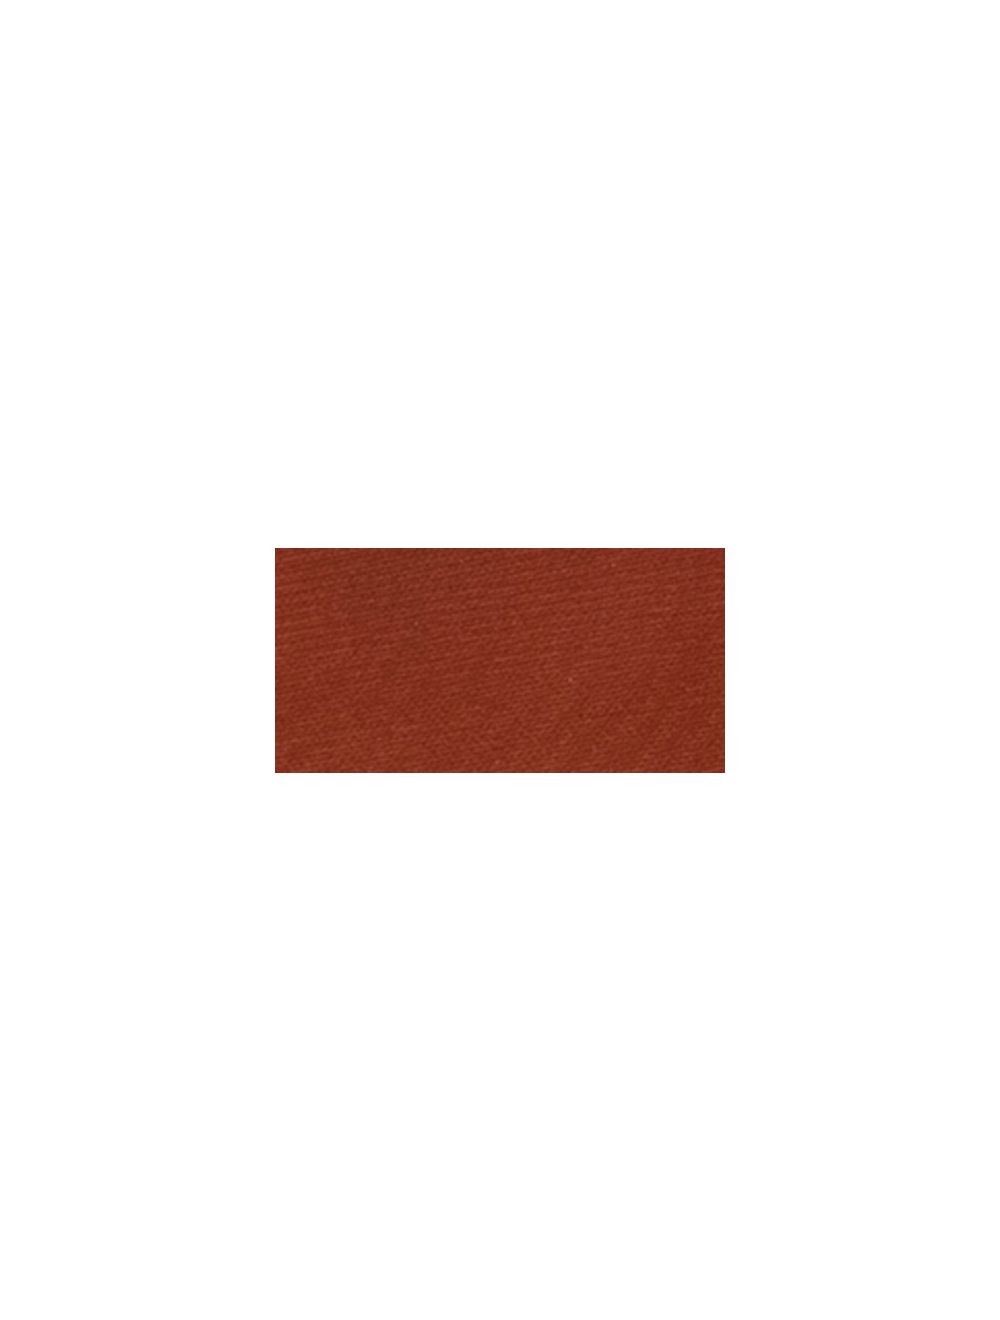 Jacquard Textile Color Paint 2.25 oz / Burnt Sienna